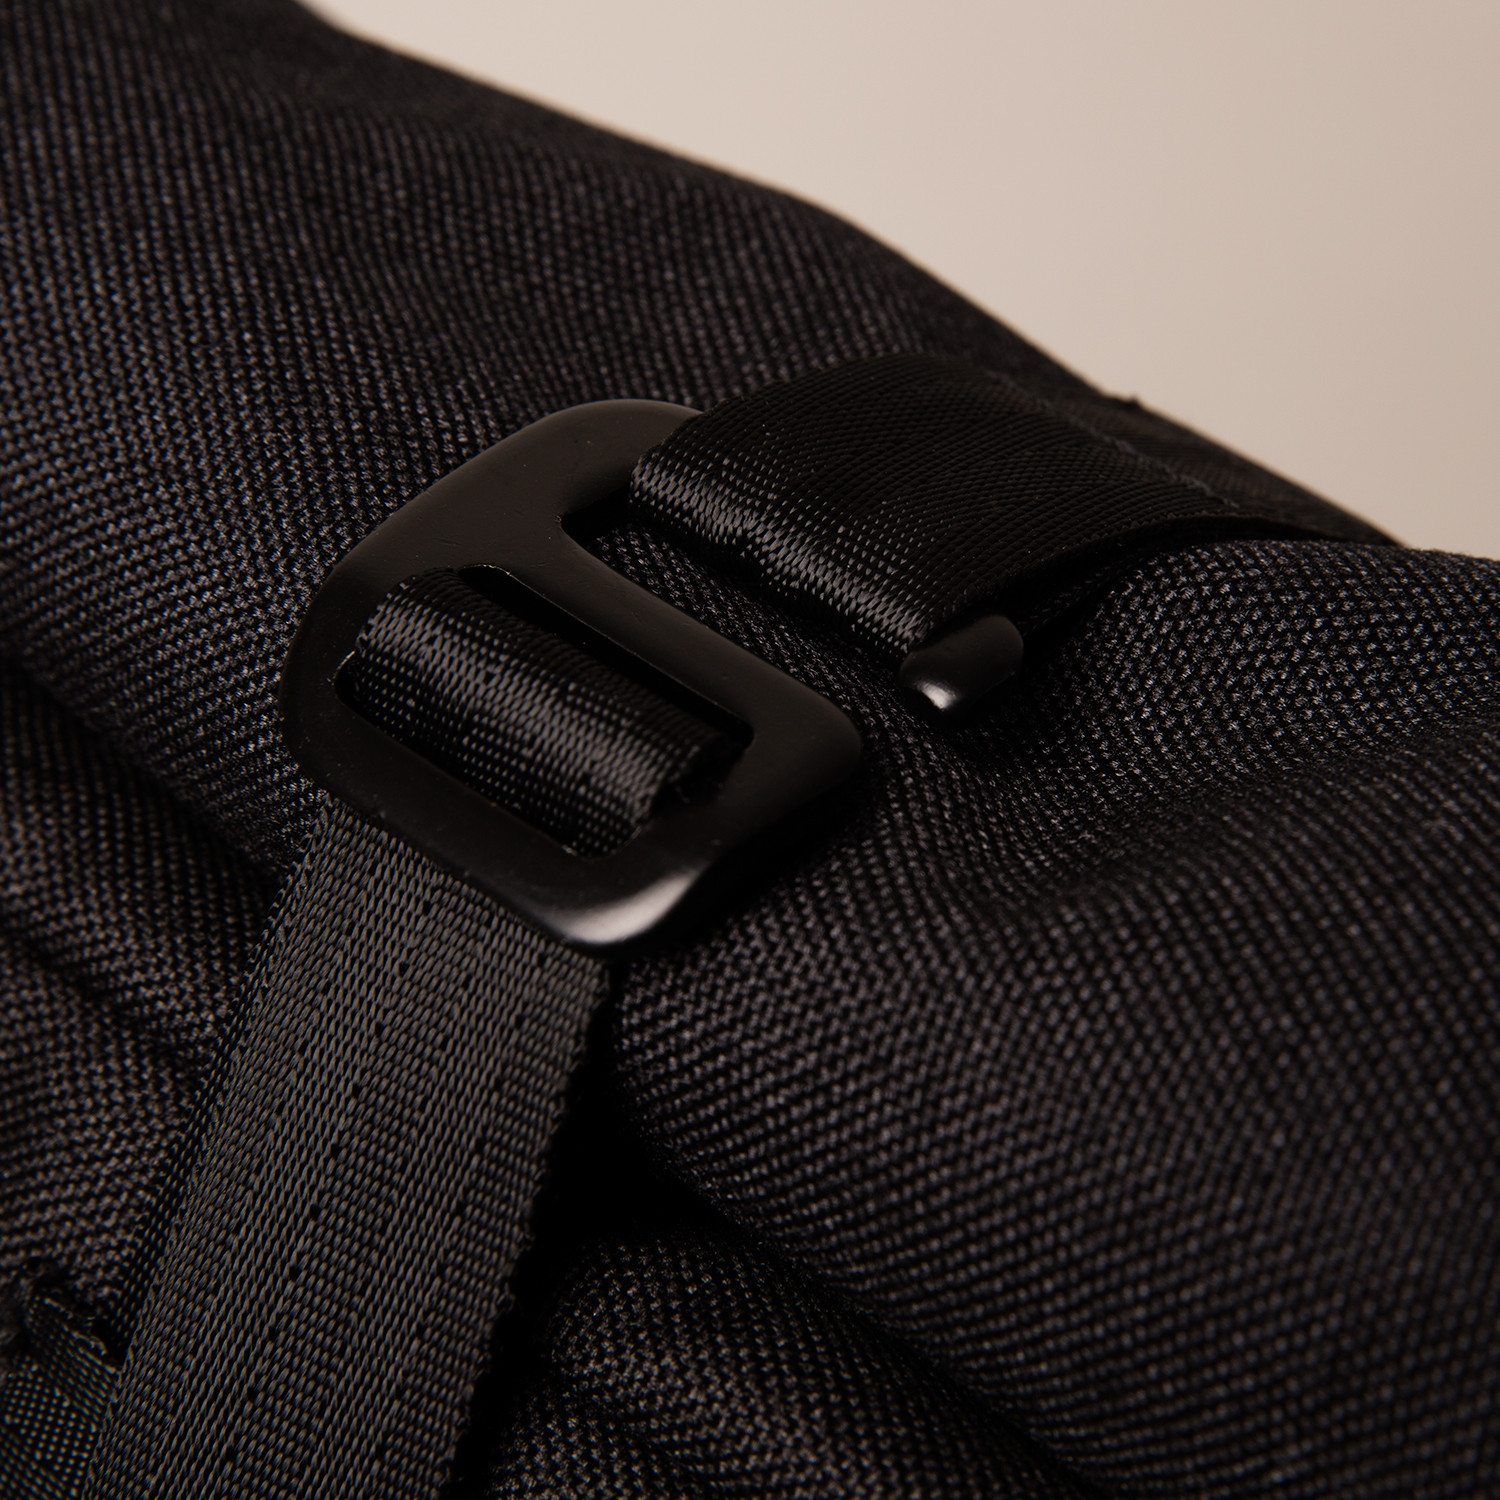 Cold Shoulder // Signature Backpack Cooler // Tan (Black) - Cold ...